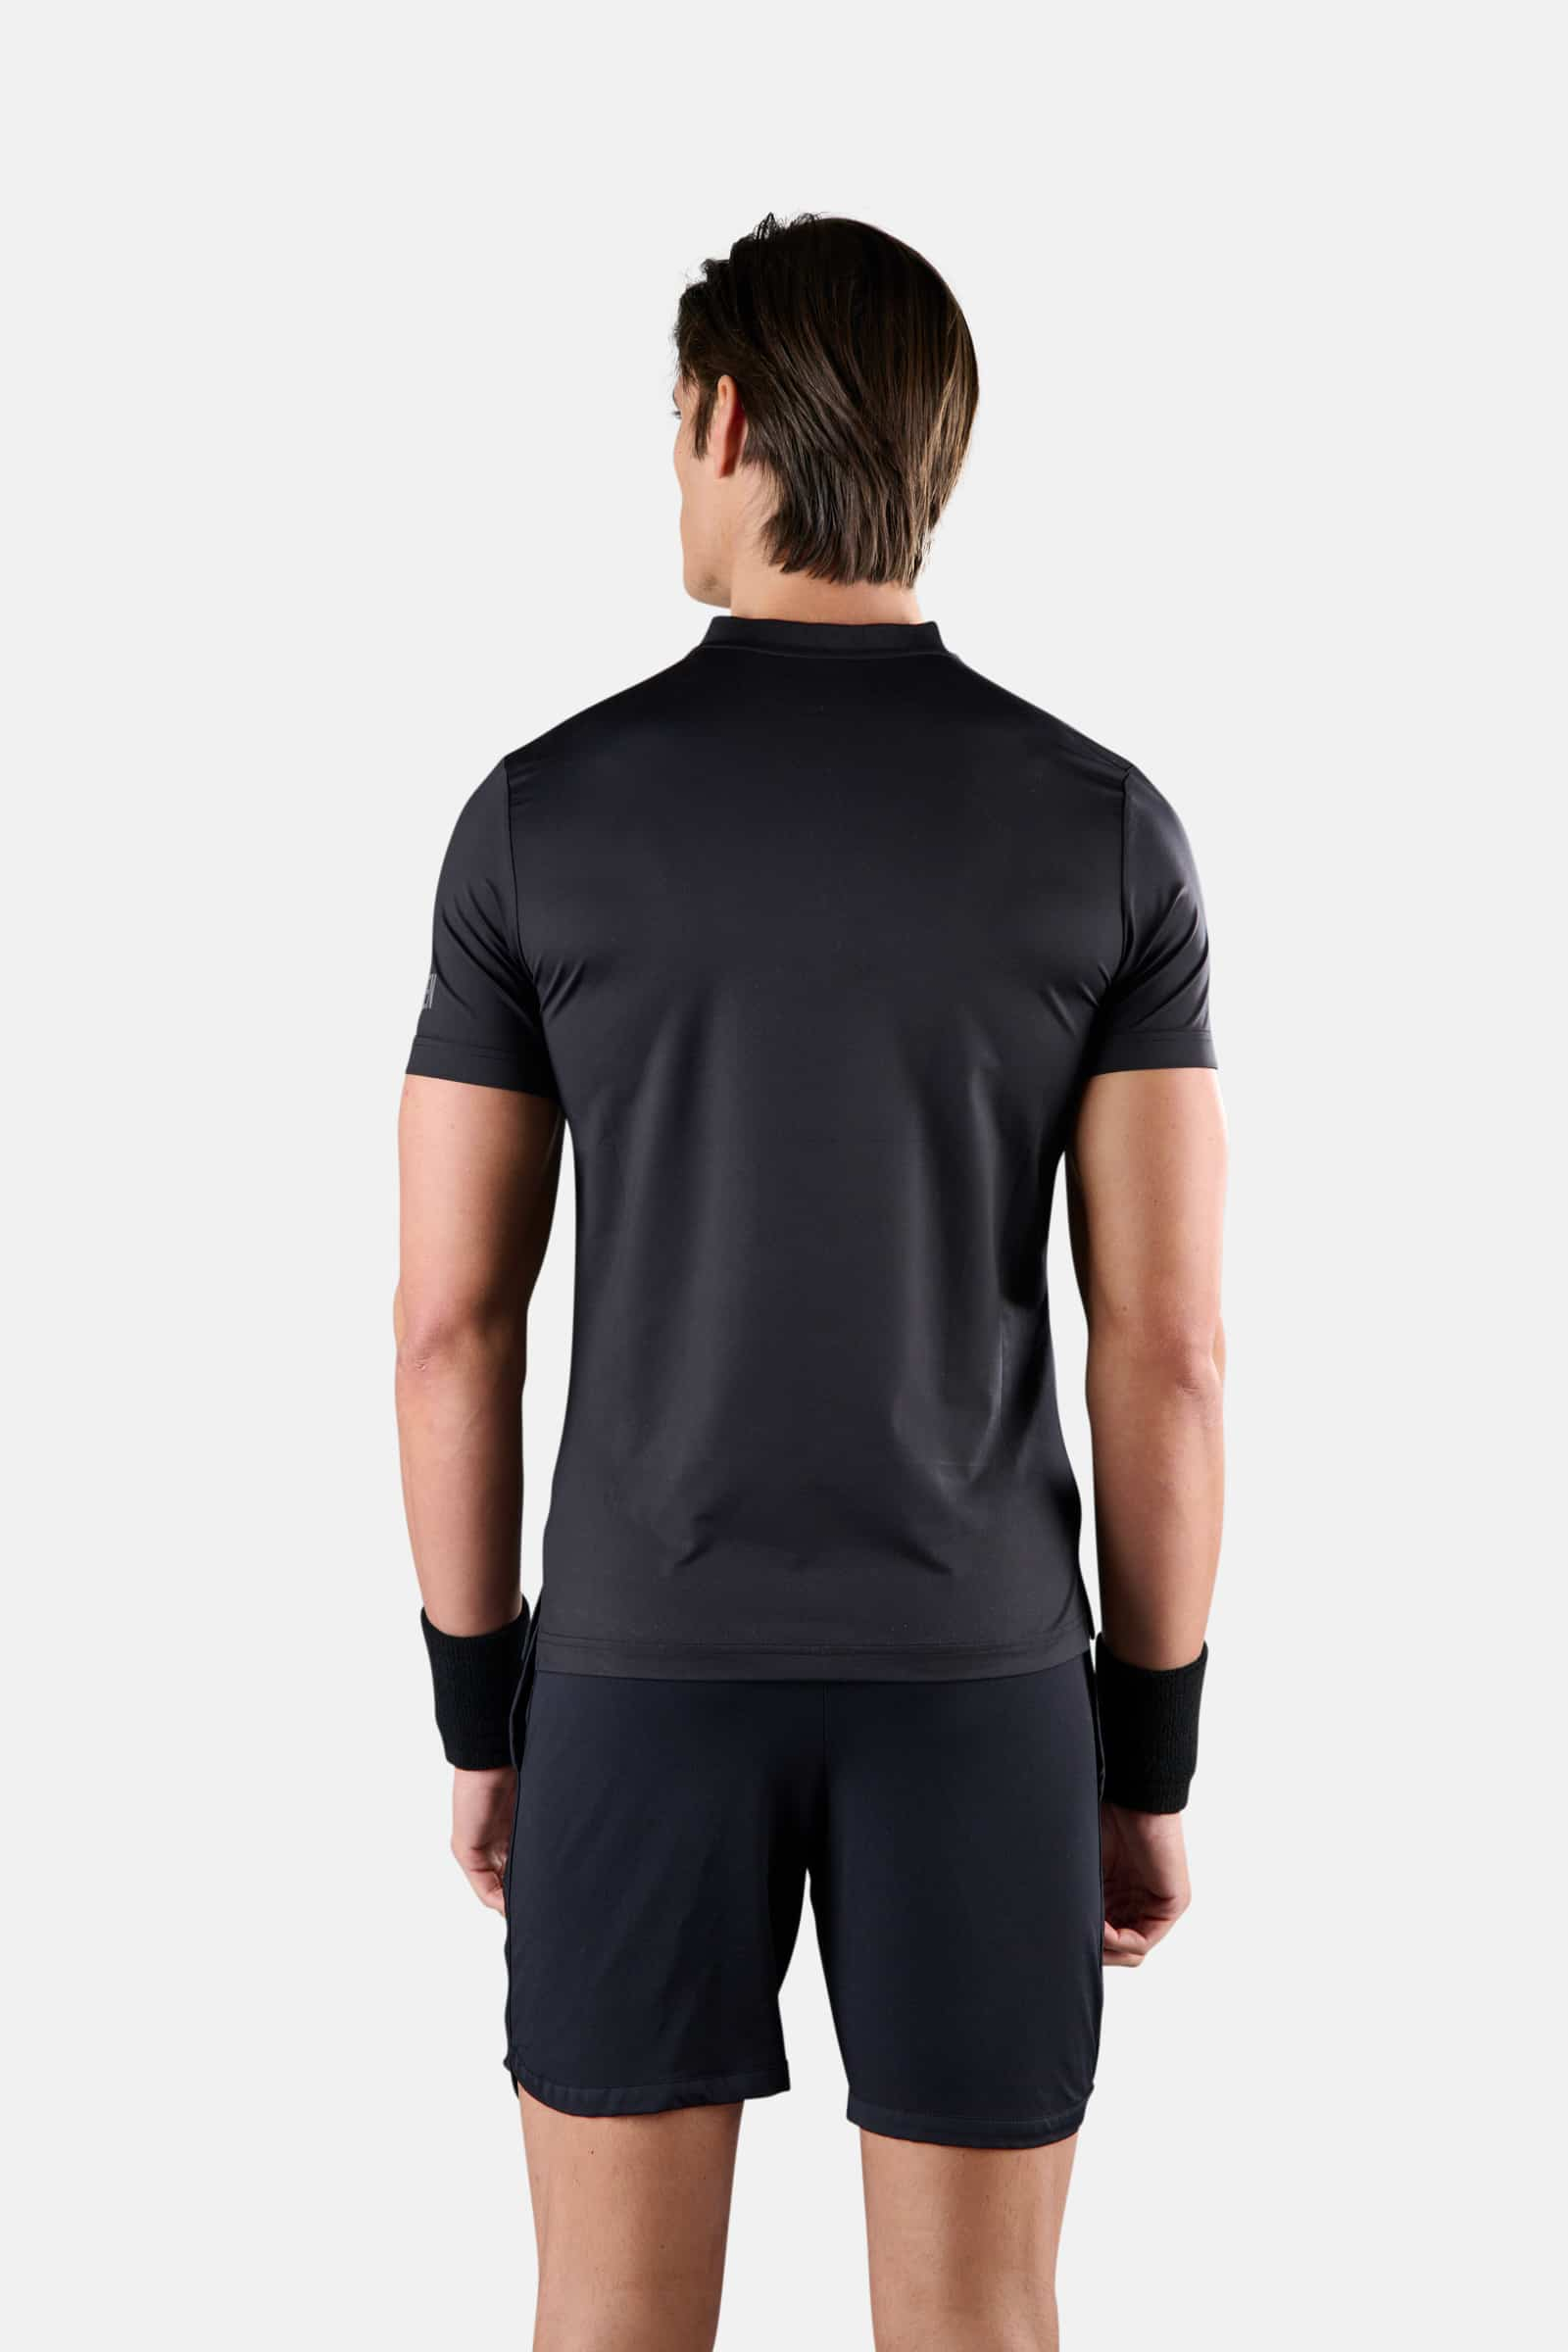 SERAFINO TECNICA BASIC - BLACK - Abbigliamento sportivo | Hydrogen